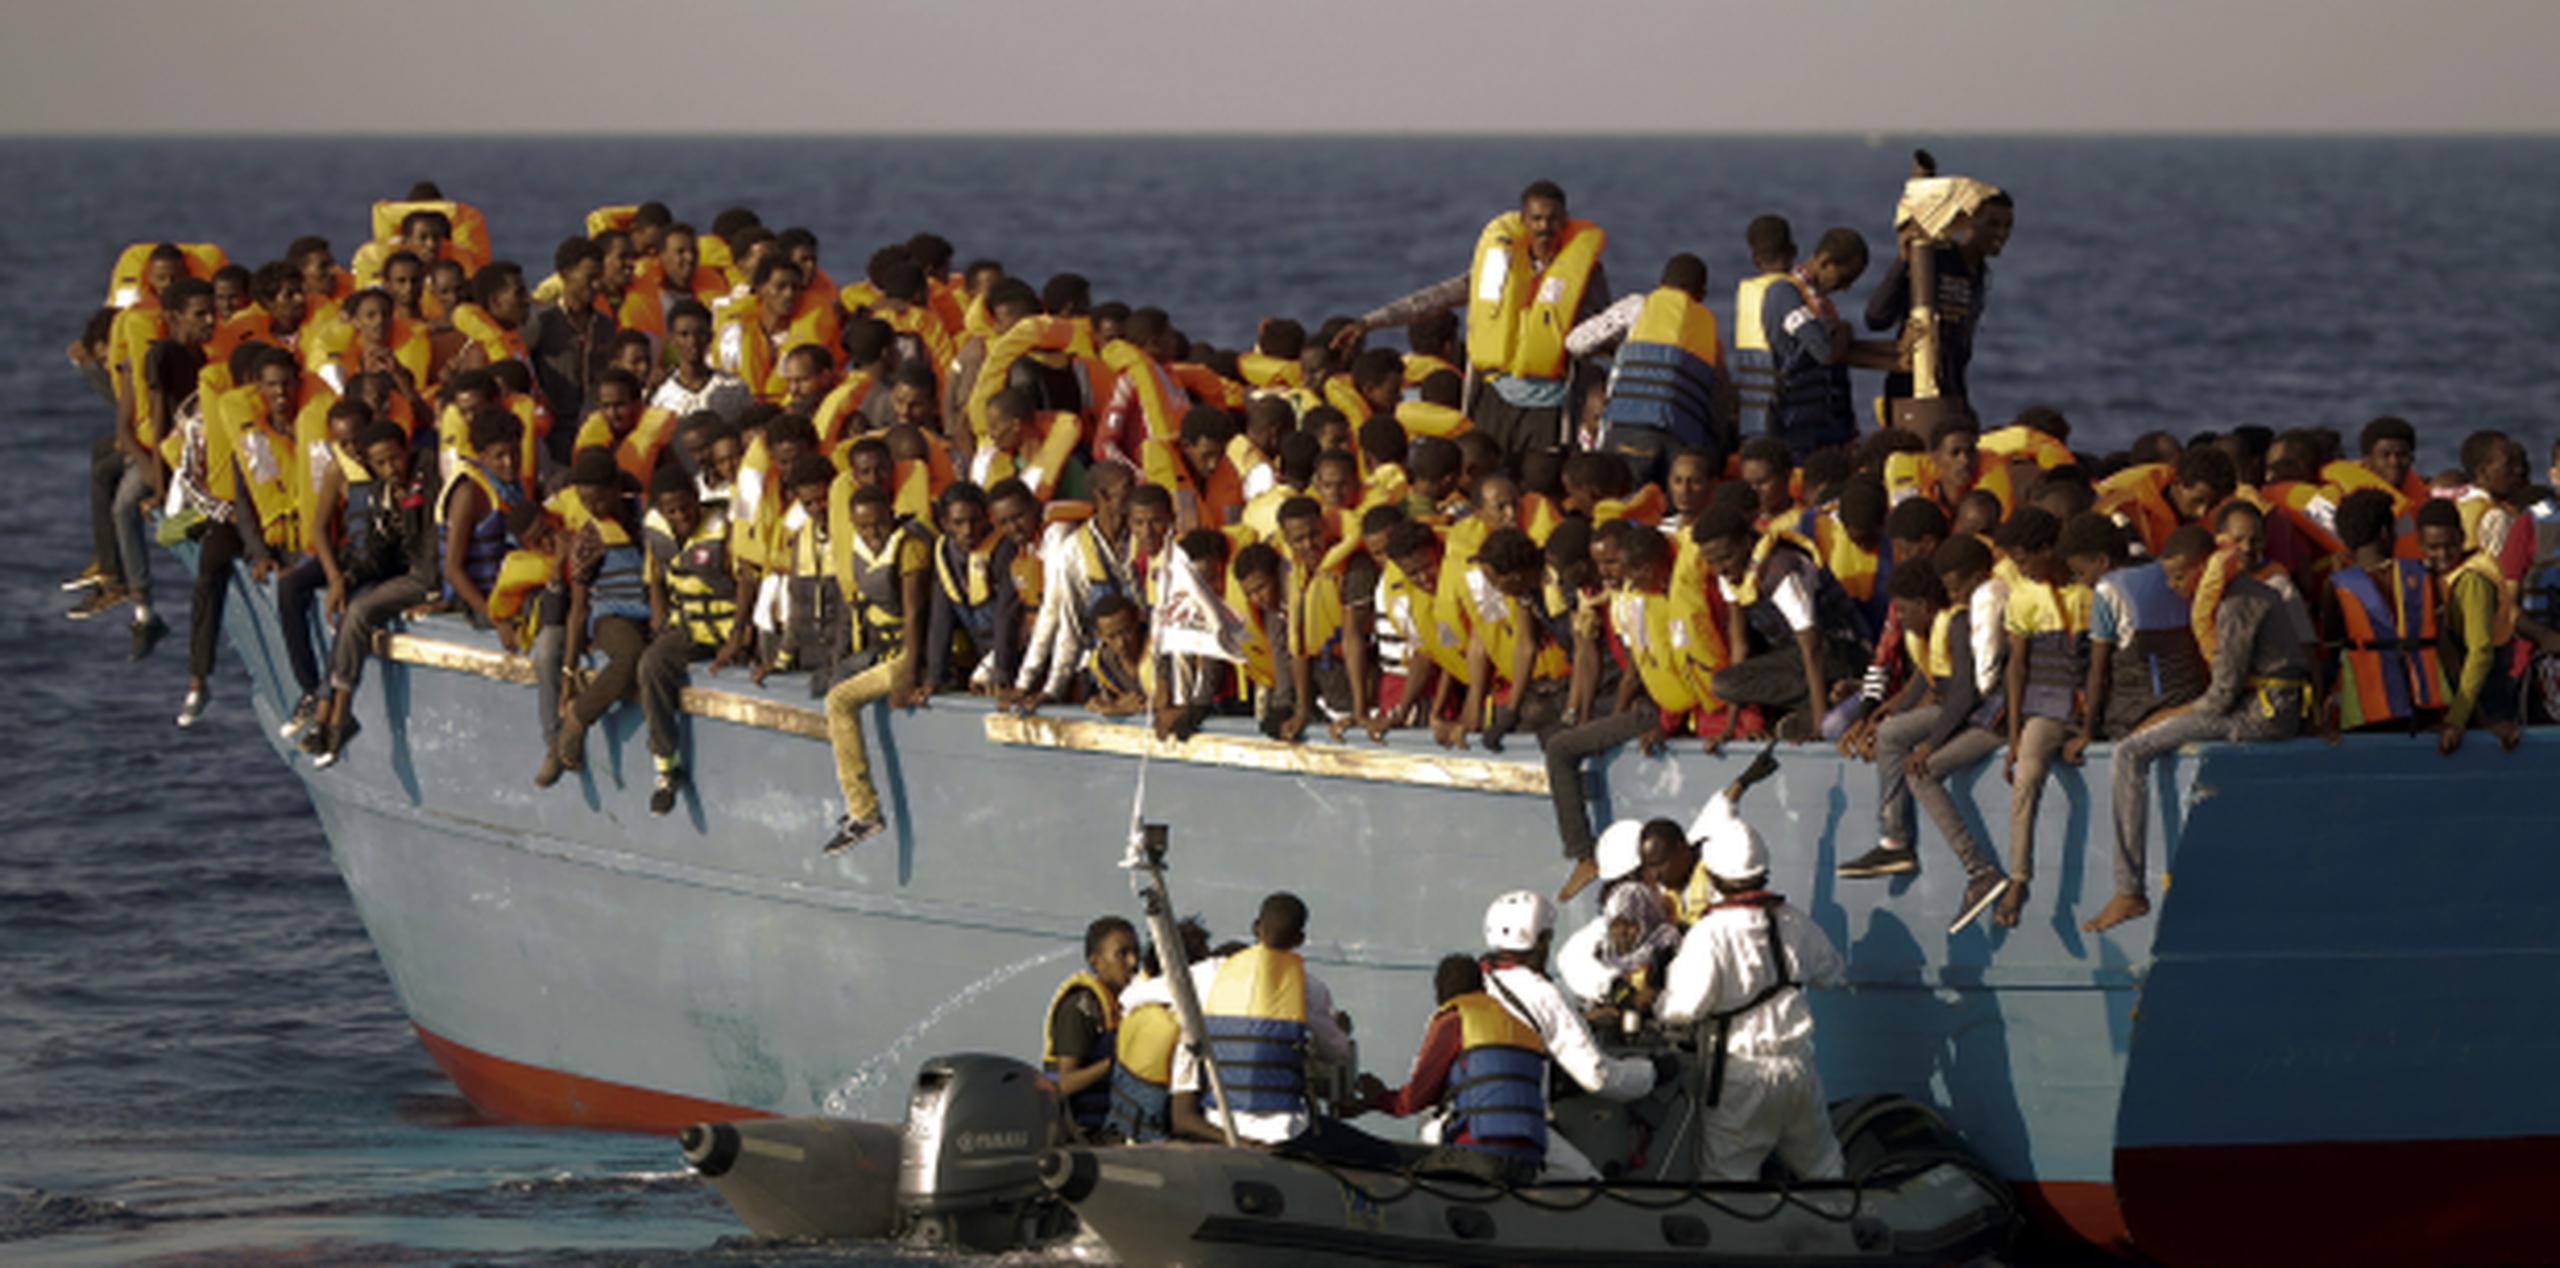 Miles de migrantes intentan a diario cruzar el Mediterráneo hacia Europa en busca de mejores condiciones de vida. (Archivo)